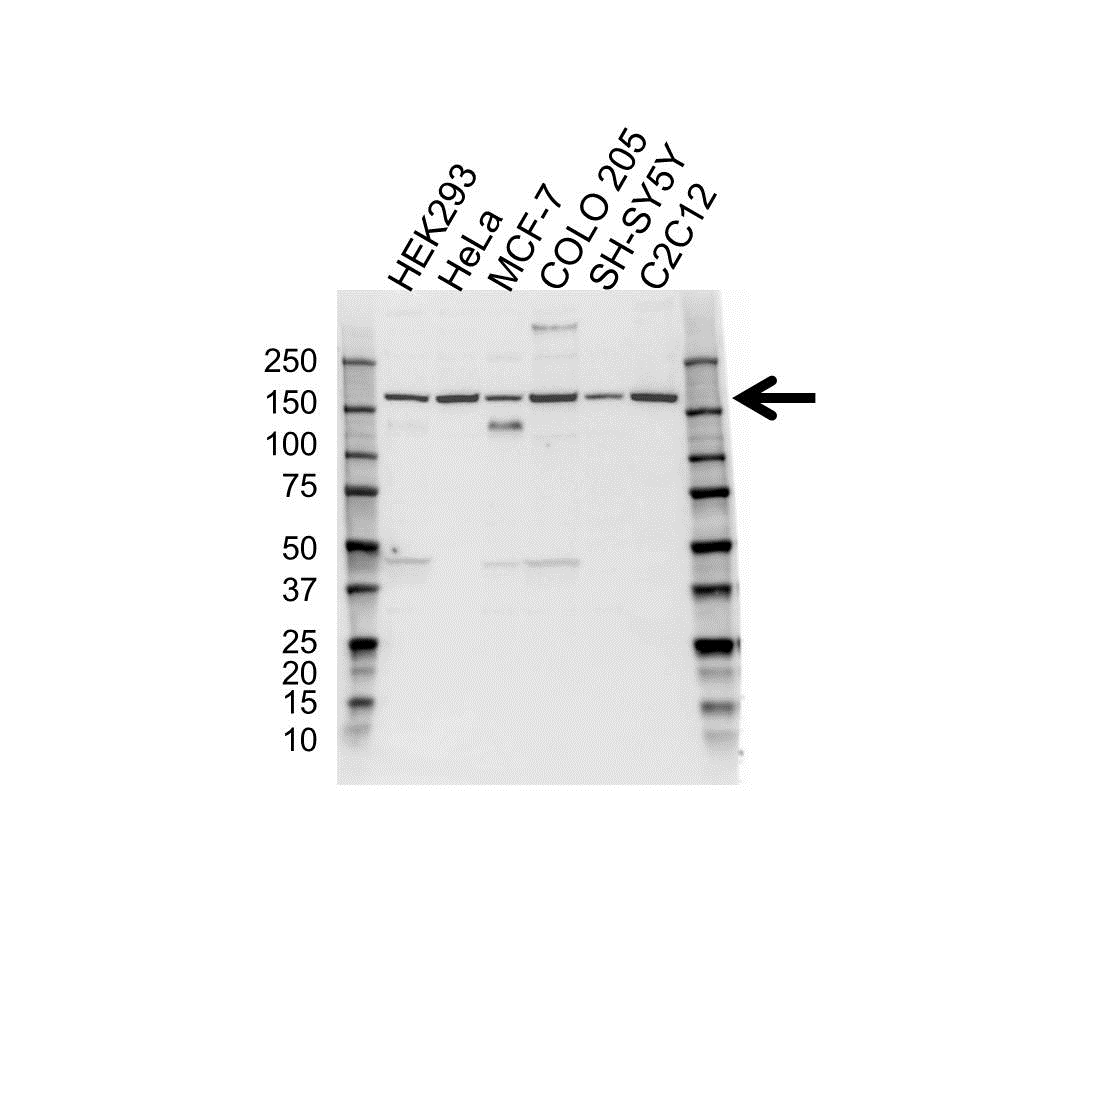 Anti ROCK2 Antibody (PrecisionAb Polyclonal Antibody) gallery image 1